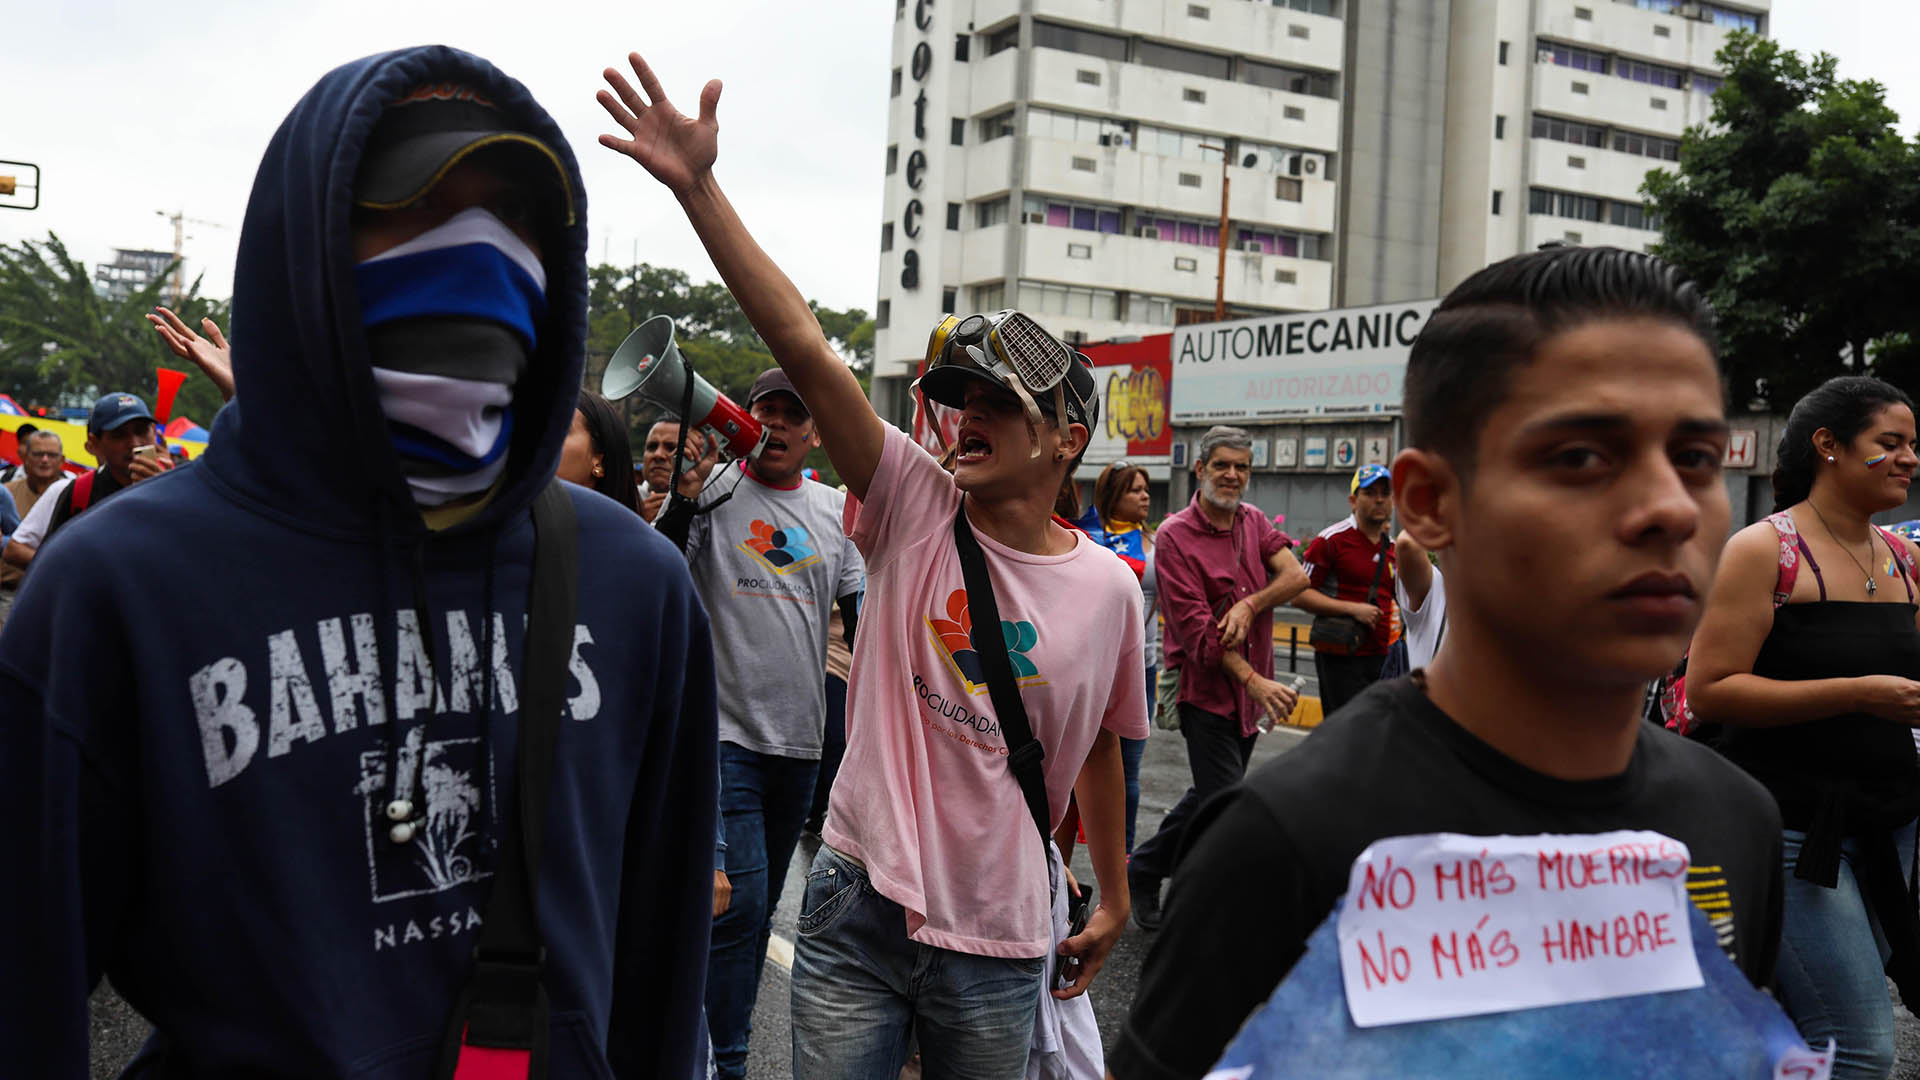 “Estamos marchando para que Guaidó se proclame presidente. No queremos a Maduro que es un usurpador. Estamos aquí para que se restituya la democracia”, declaró a AFP Argenis Ramos, docente de 32 años, vestido de blanco, en el este de Caracas